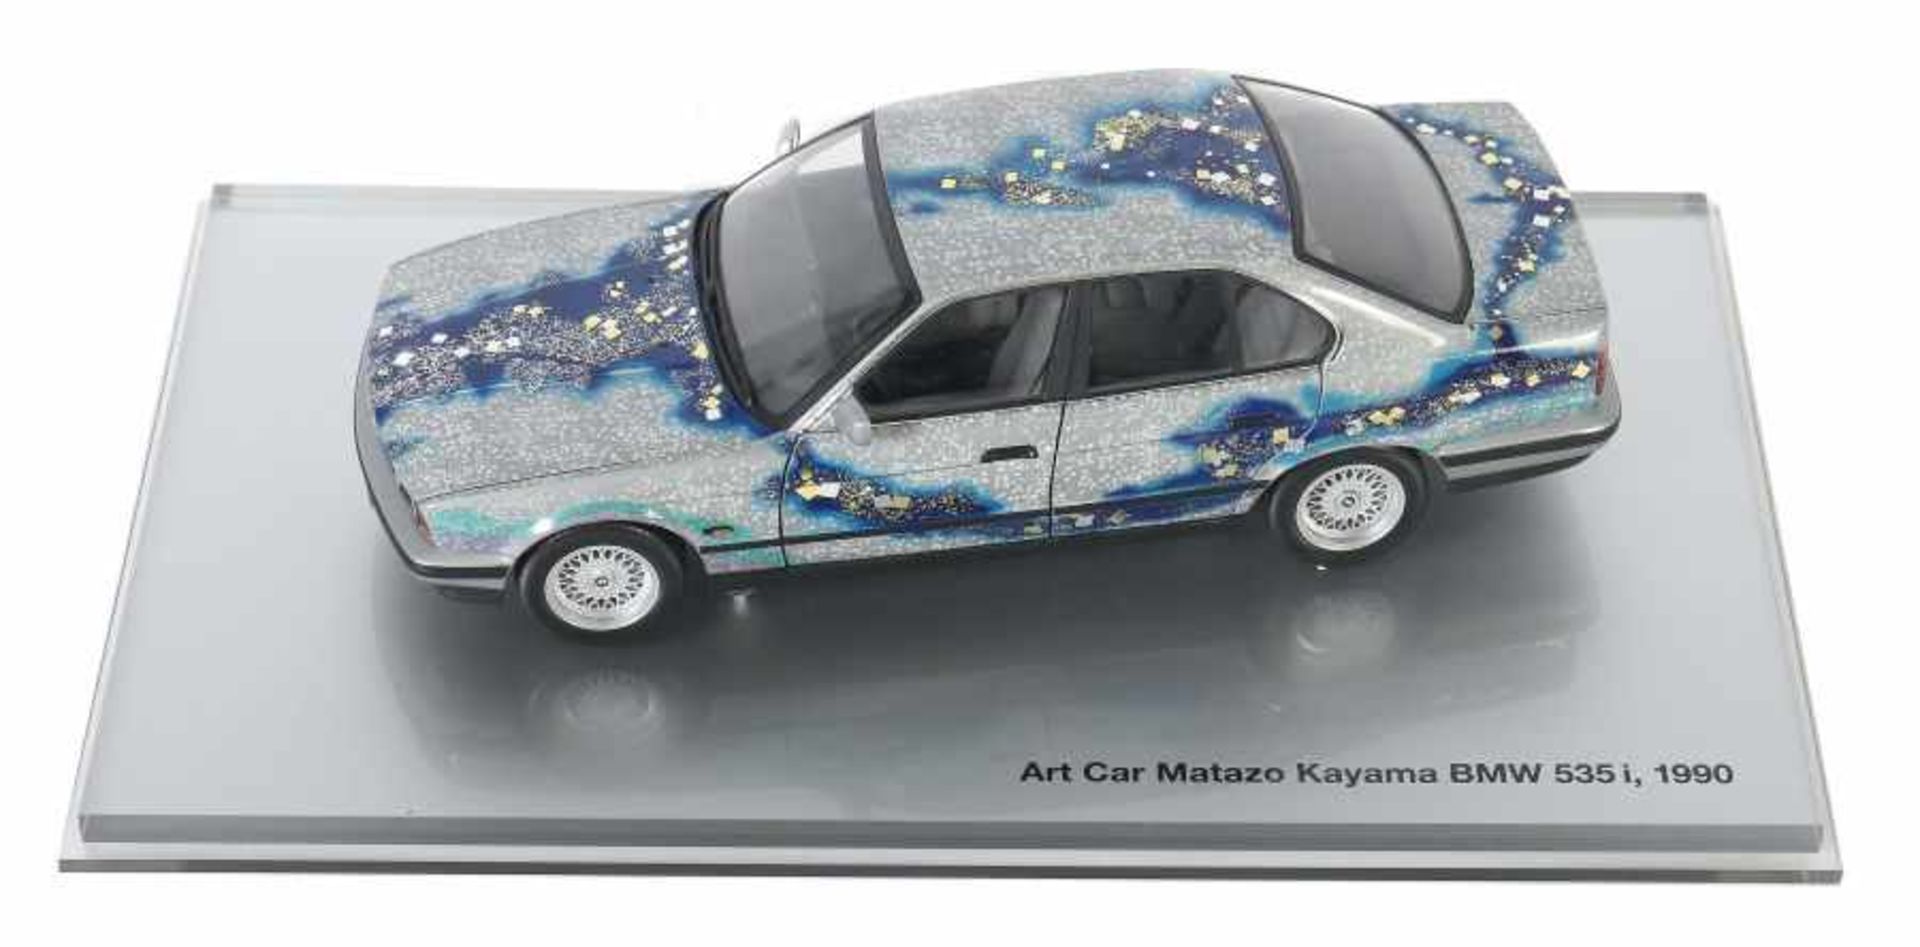 Art Car "Matazo Kayama"